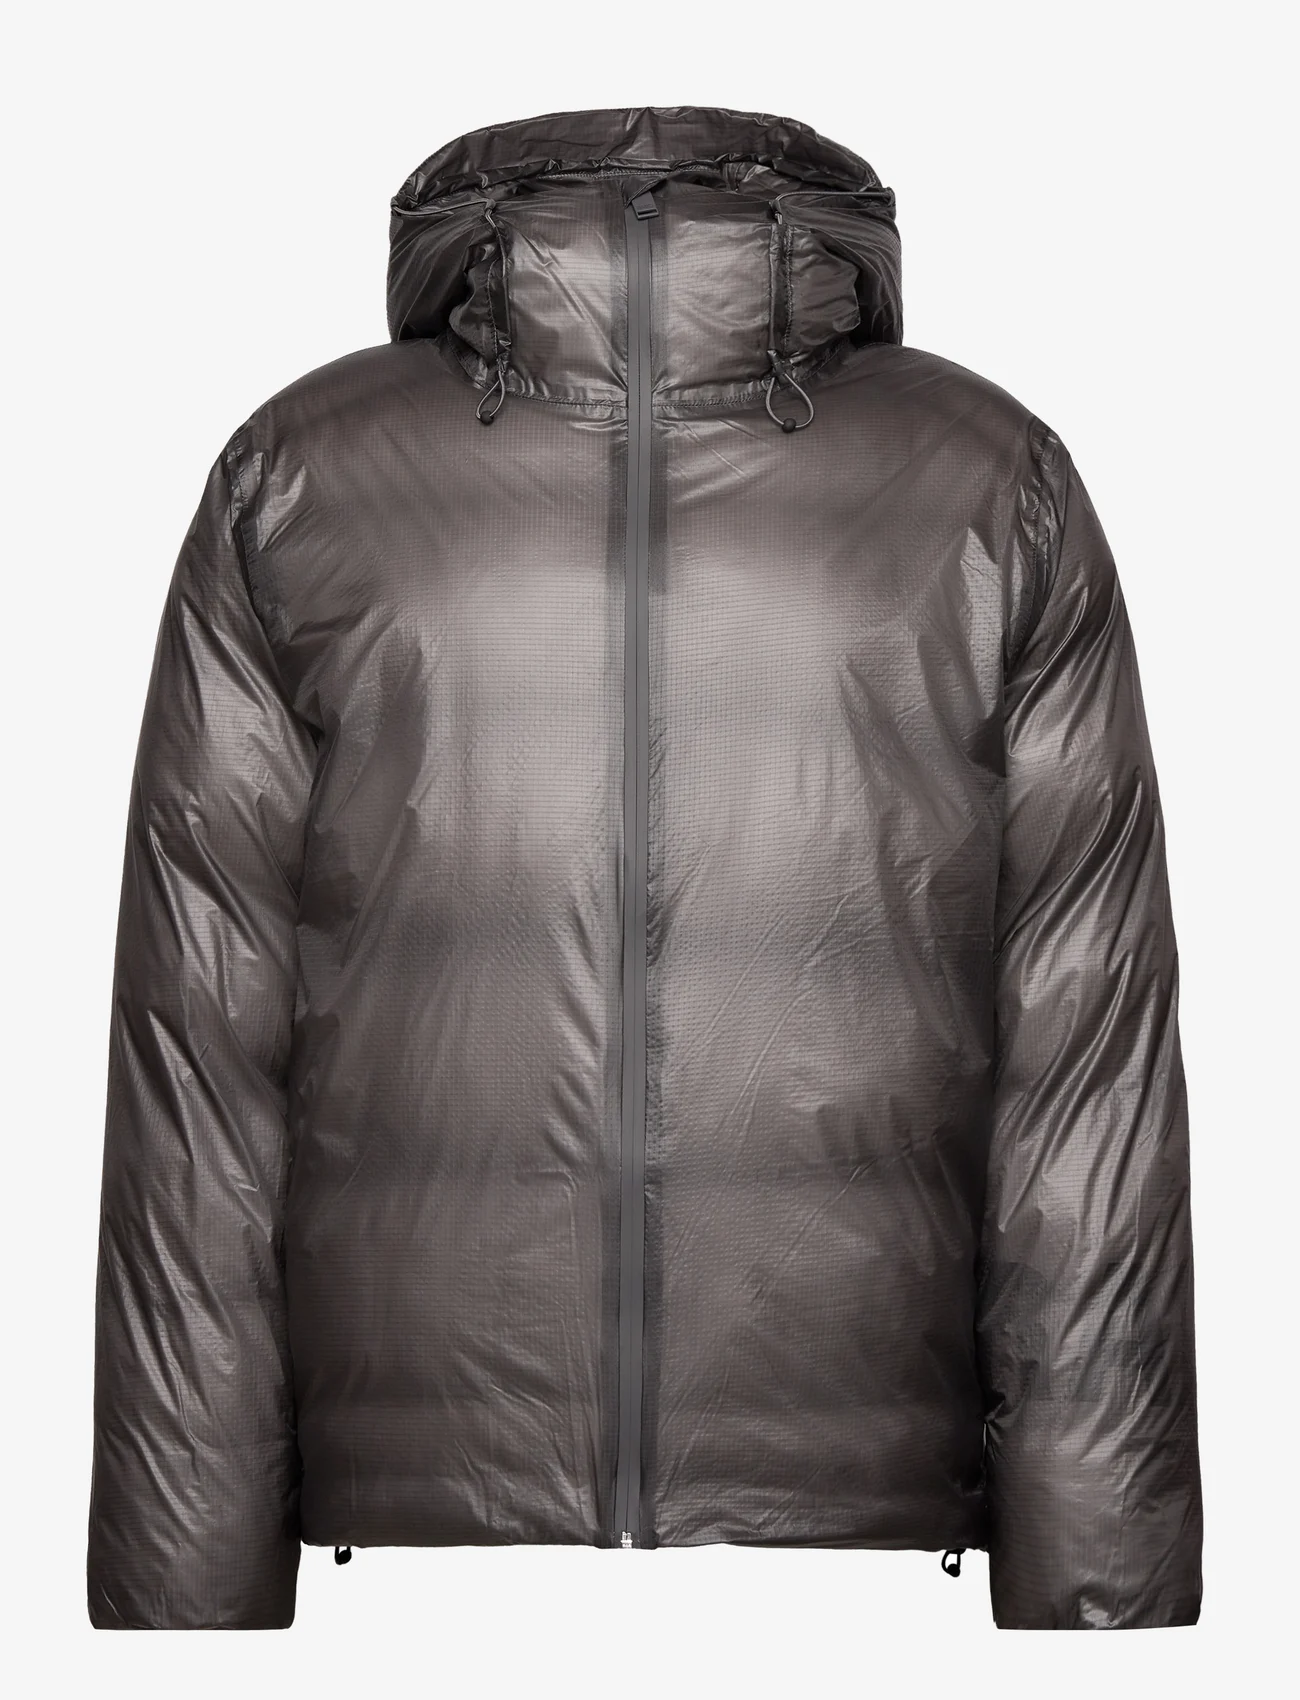 Rains - Kevo Puffer Jacket W4T3 - vinterjakker - grey - 0